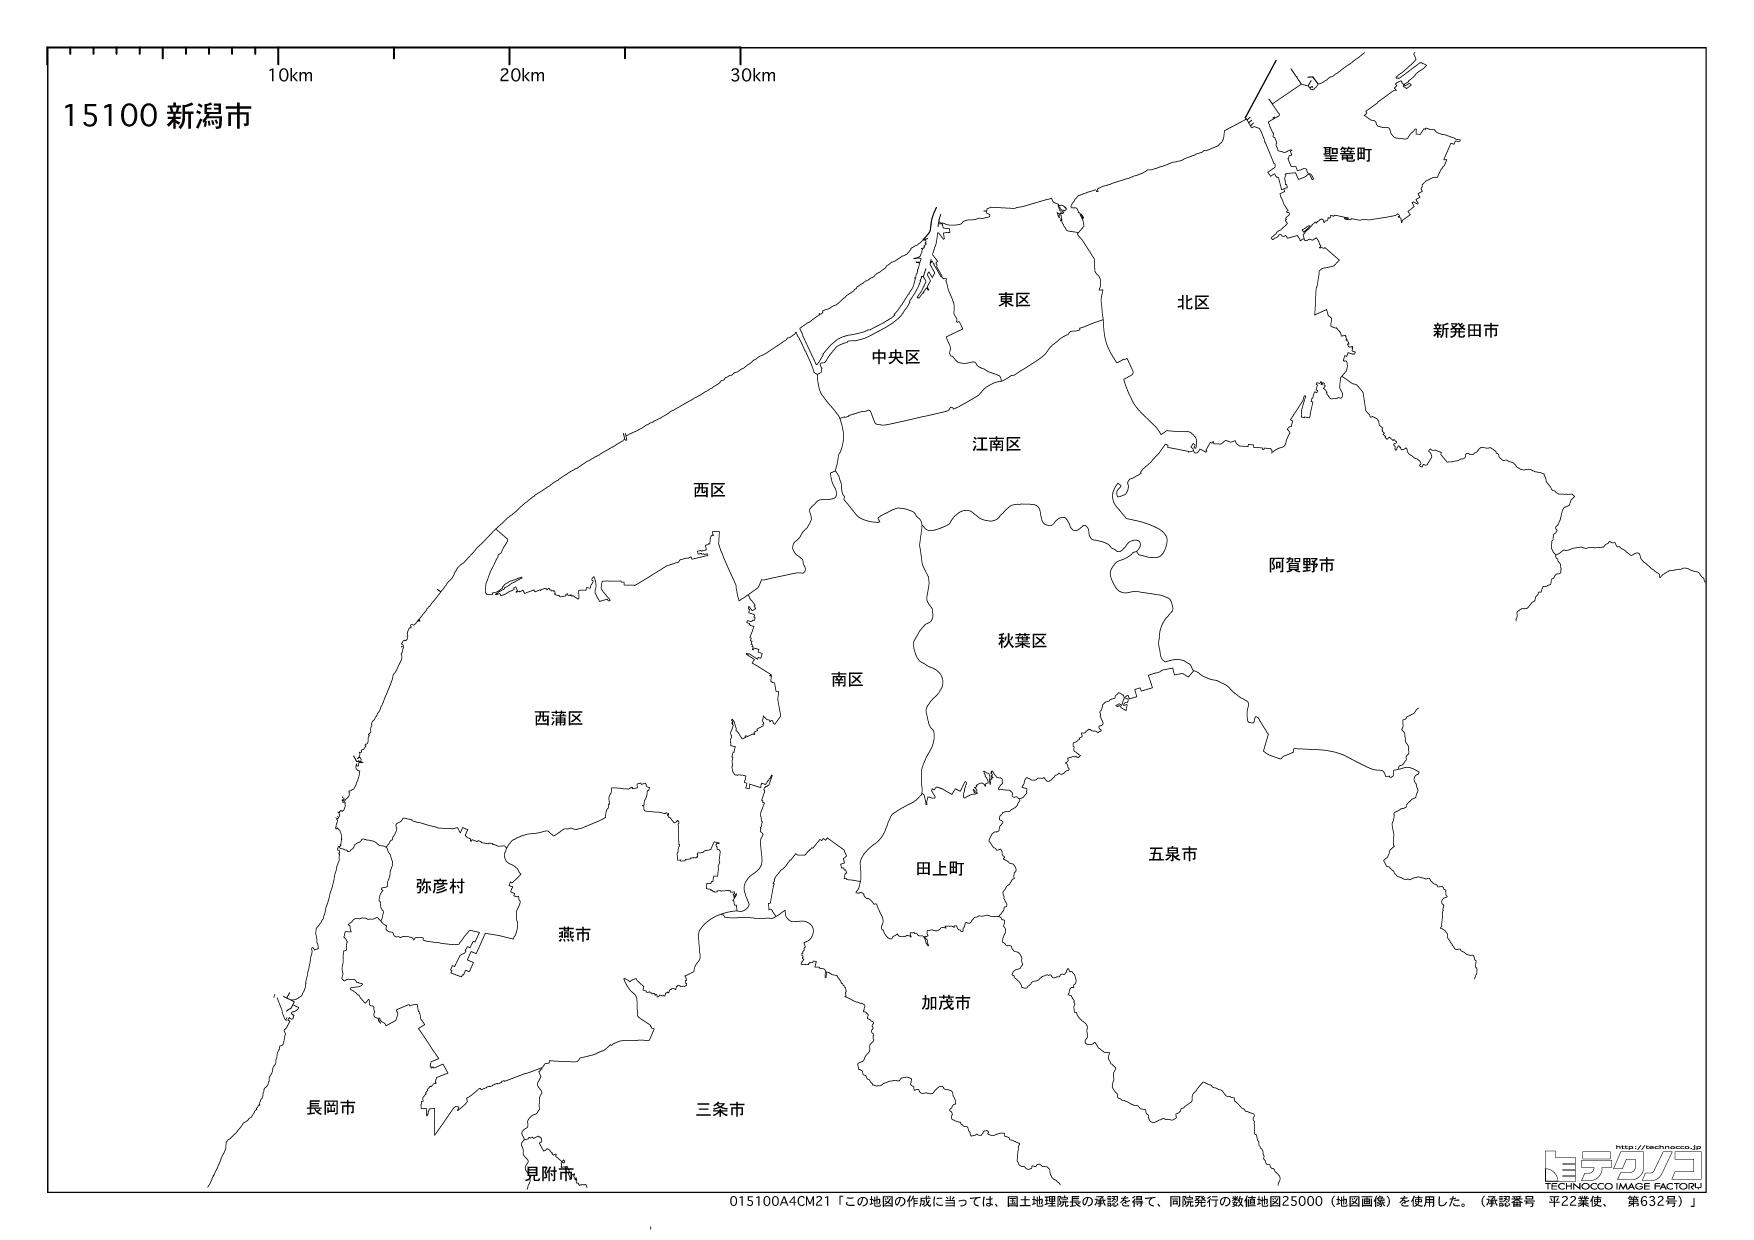 新潟県の白地図と市町村の合併情報